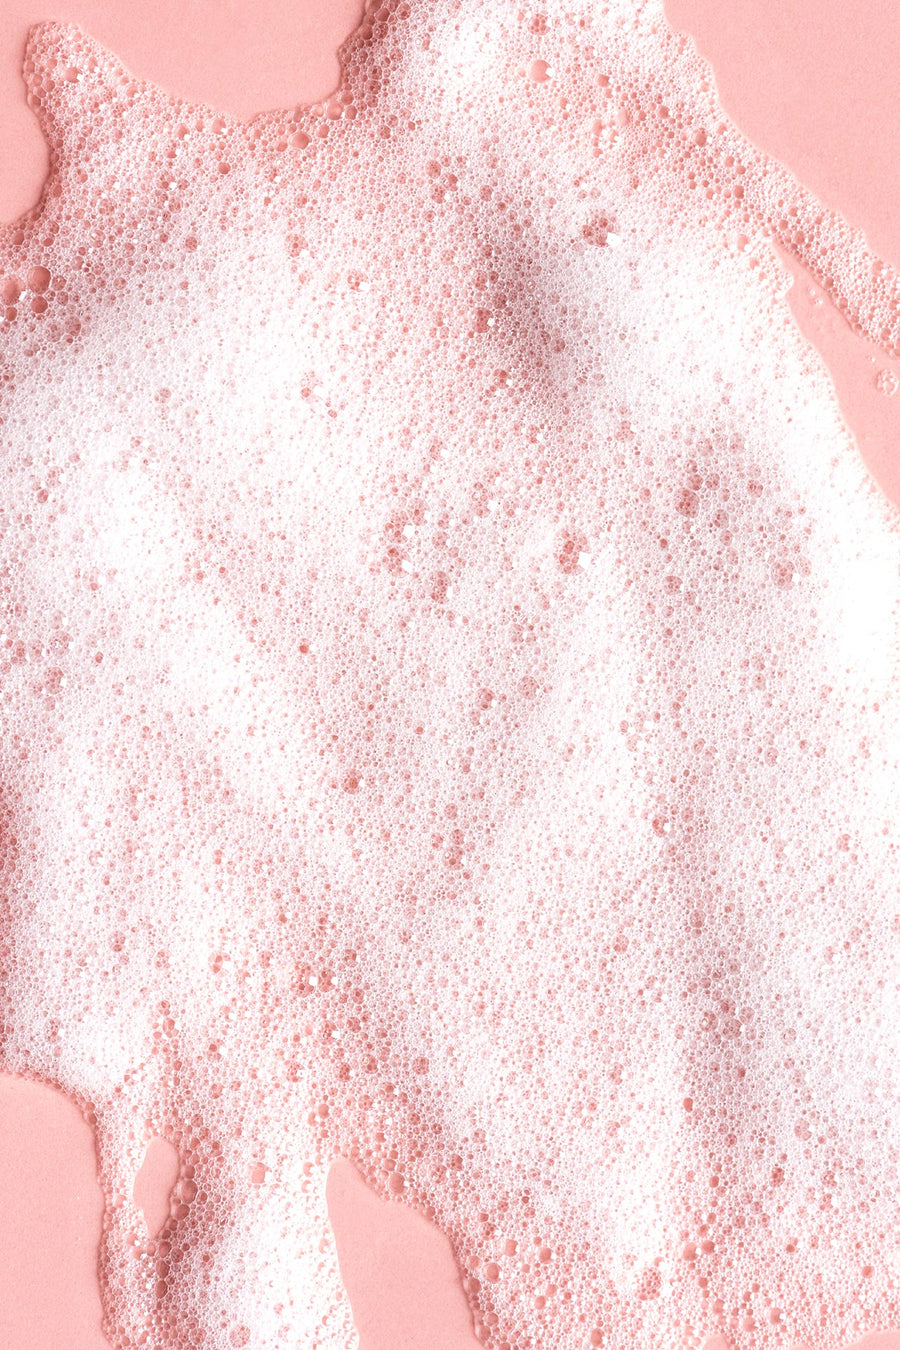 soap foam on pink background